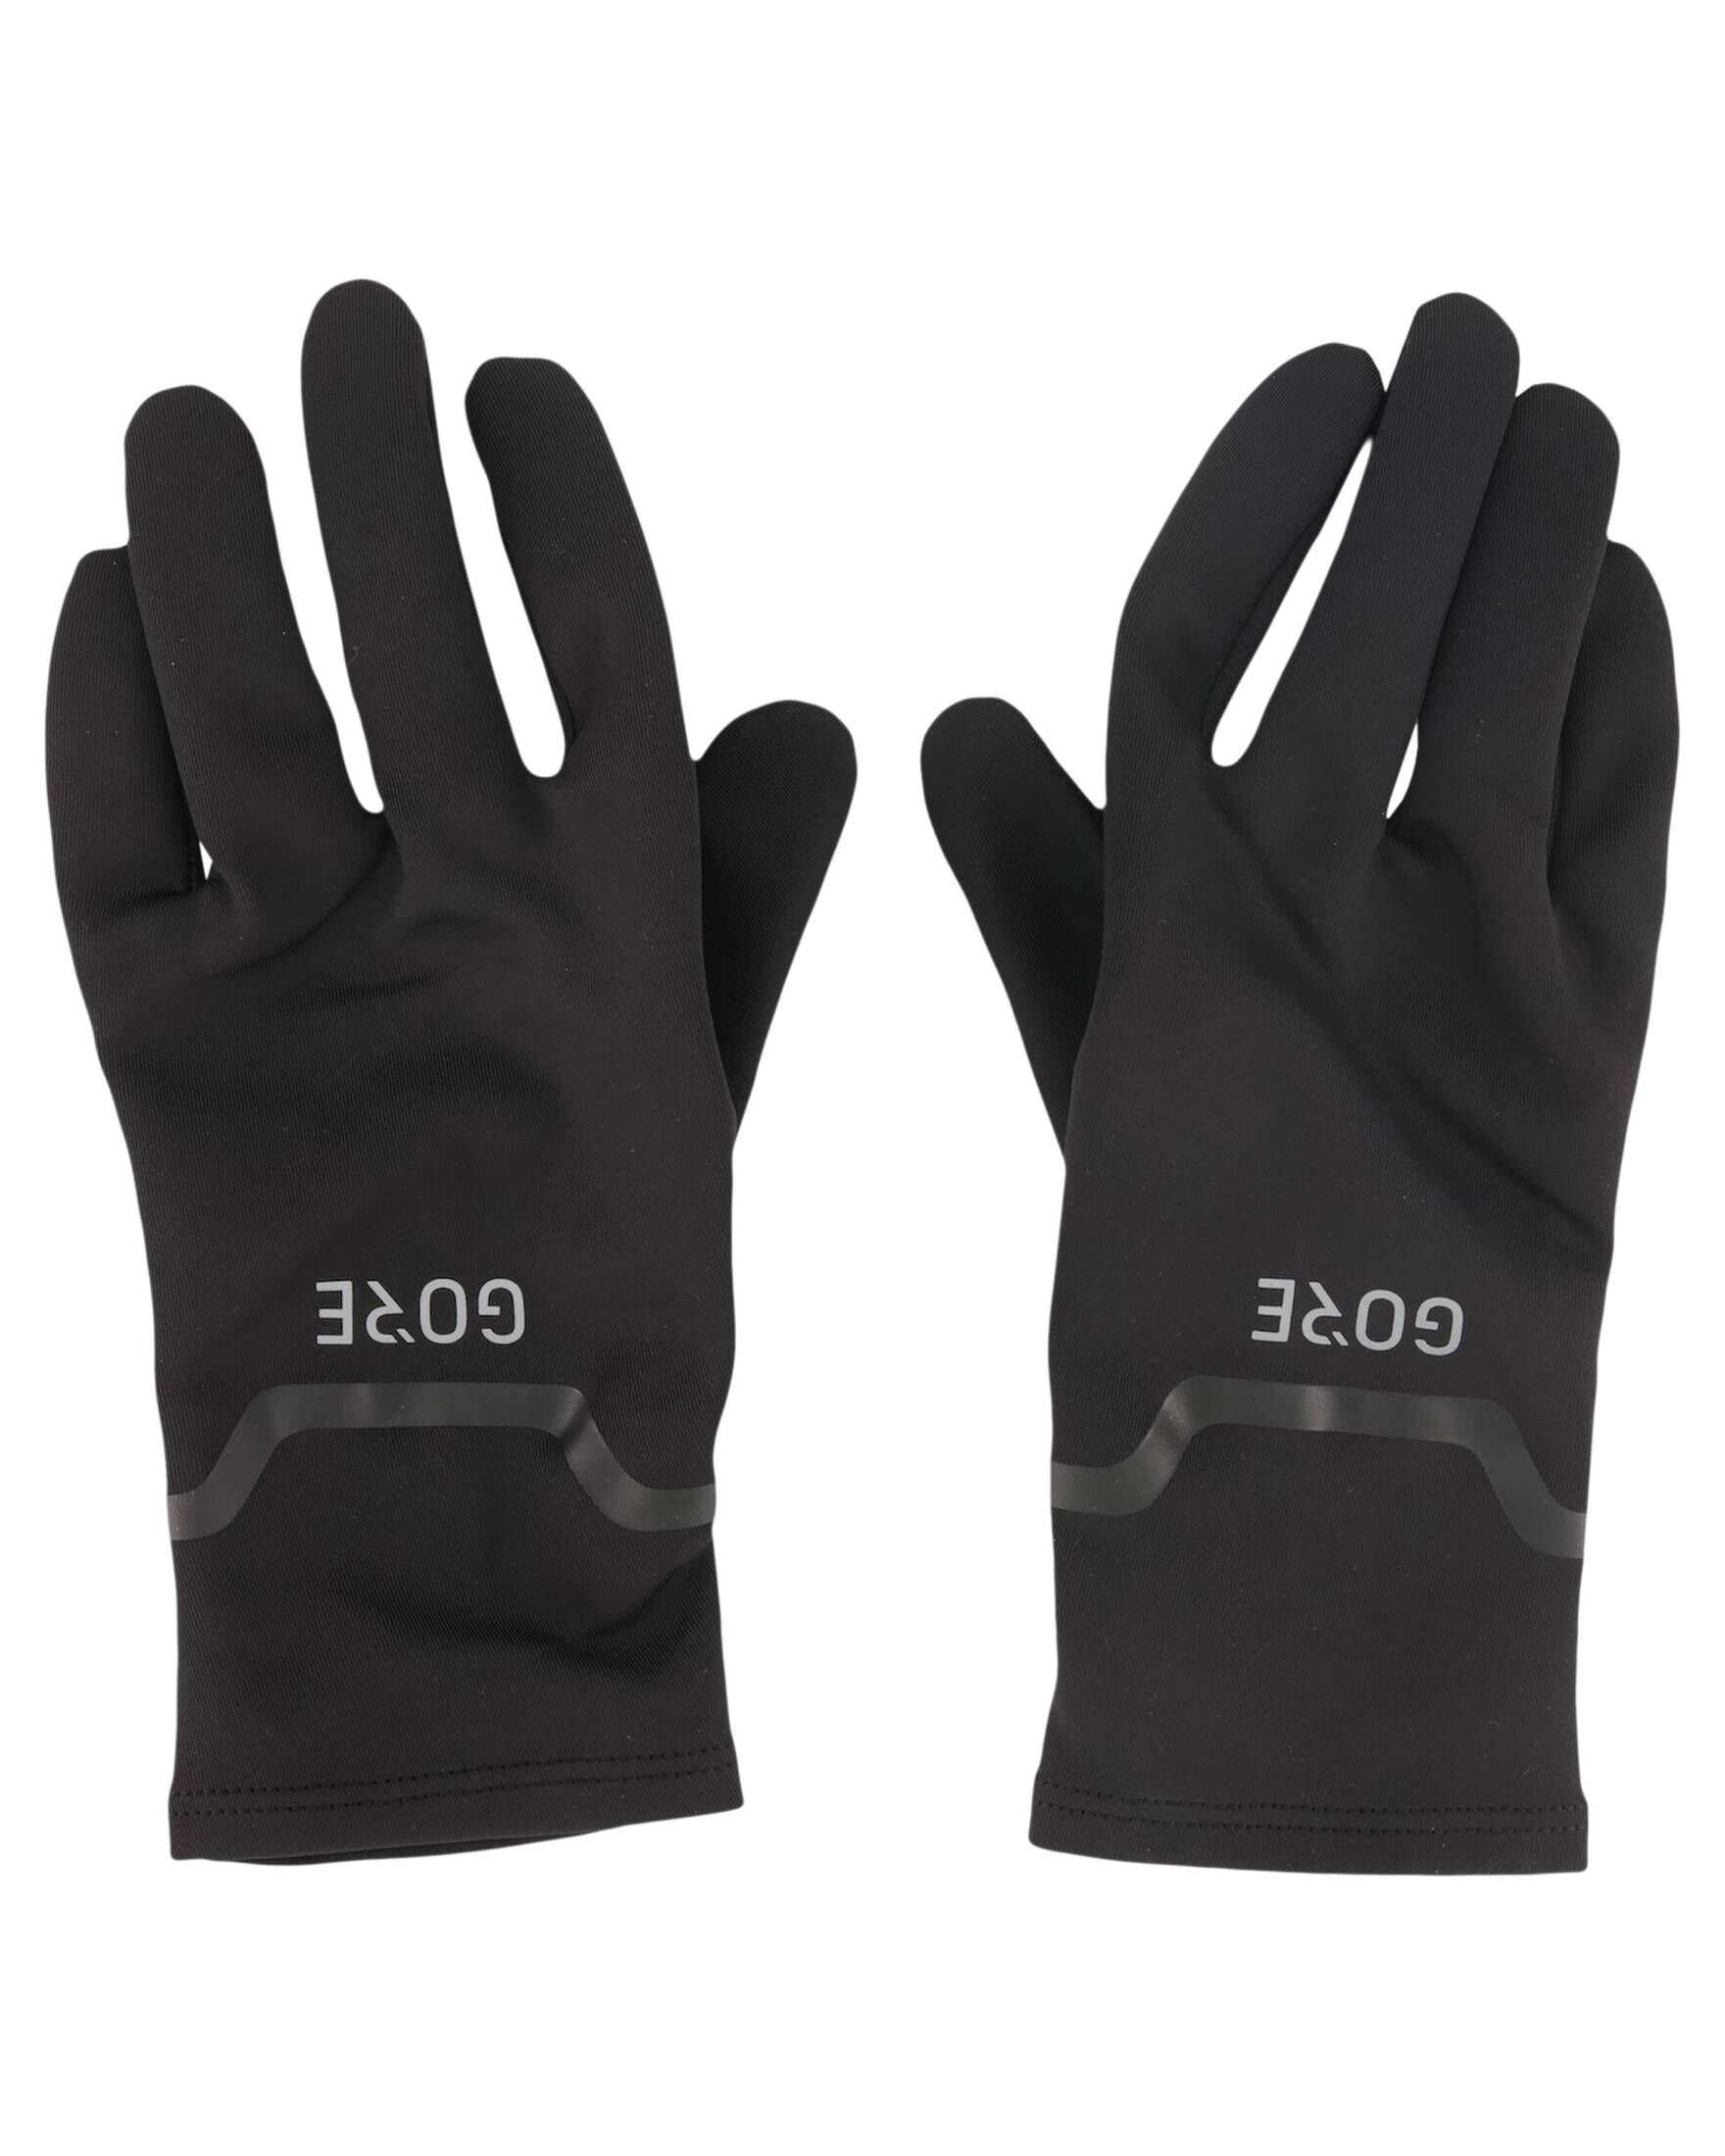 GORE® Laufhandschuhe Herren Wear 9900 und black Damen Handschuhe